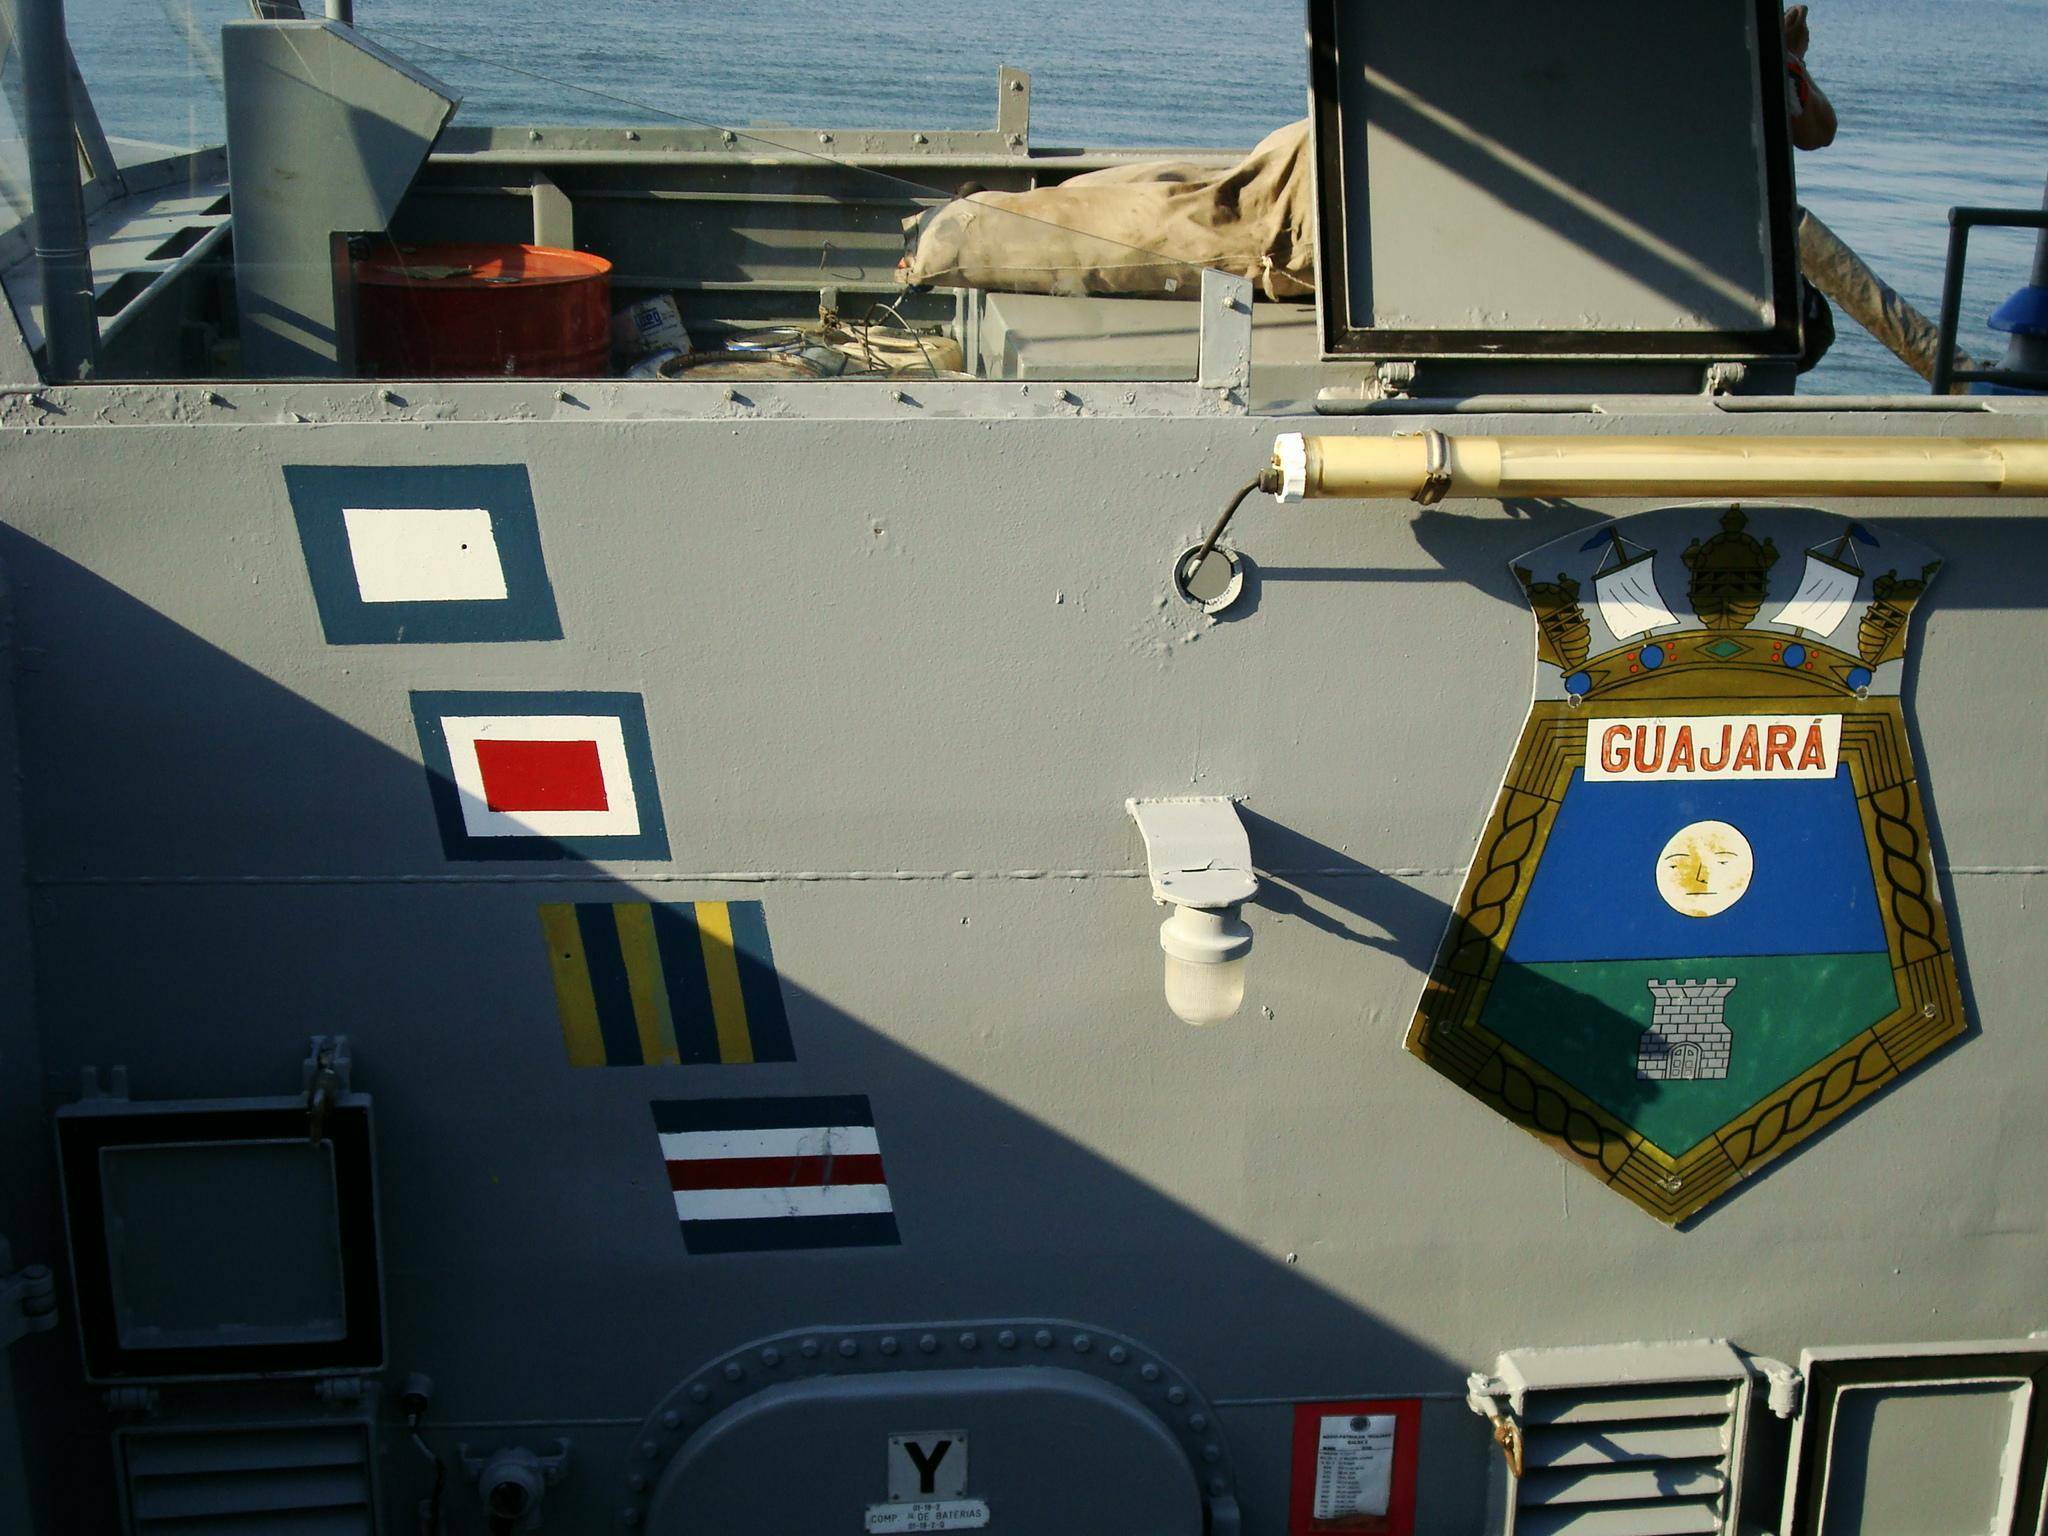 Detalhes da superestrutura mostrando o passadiço, e na lateral, pintado o callsign e o brasão do navio. (foto: NGB - Bruno Pricolli)